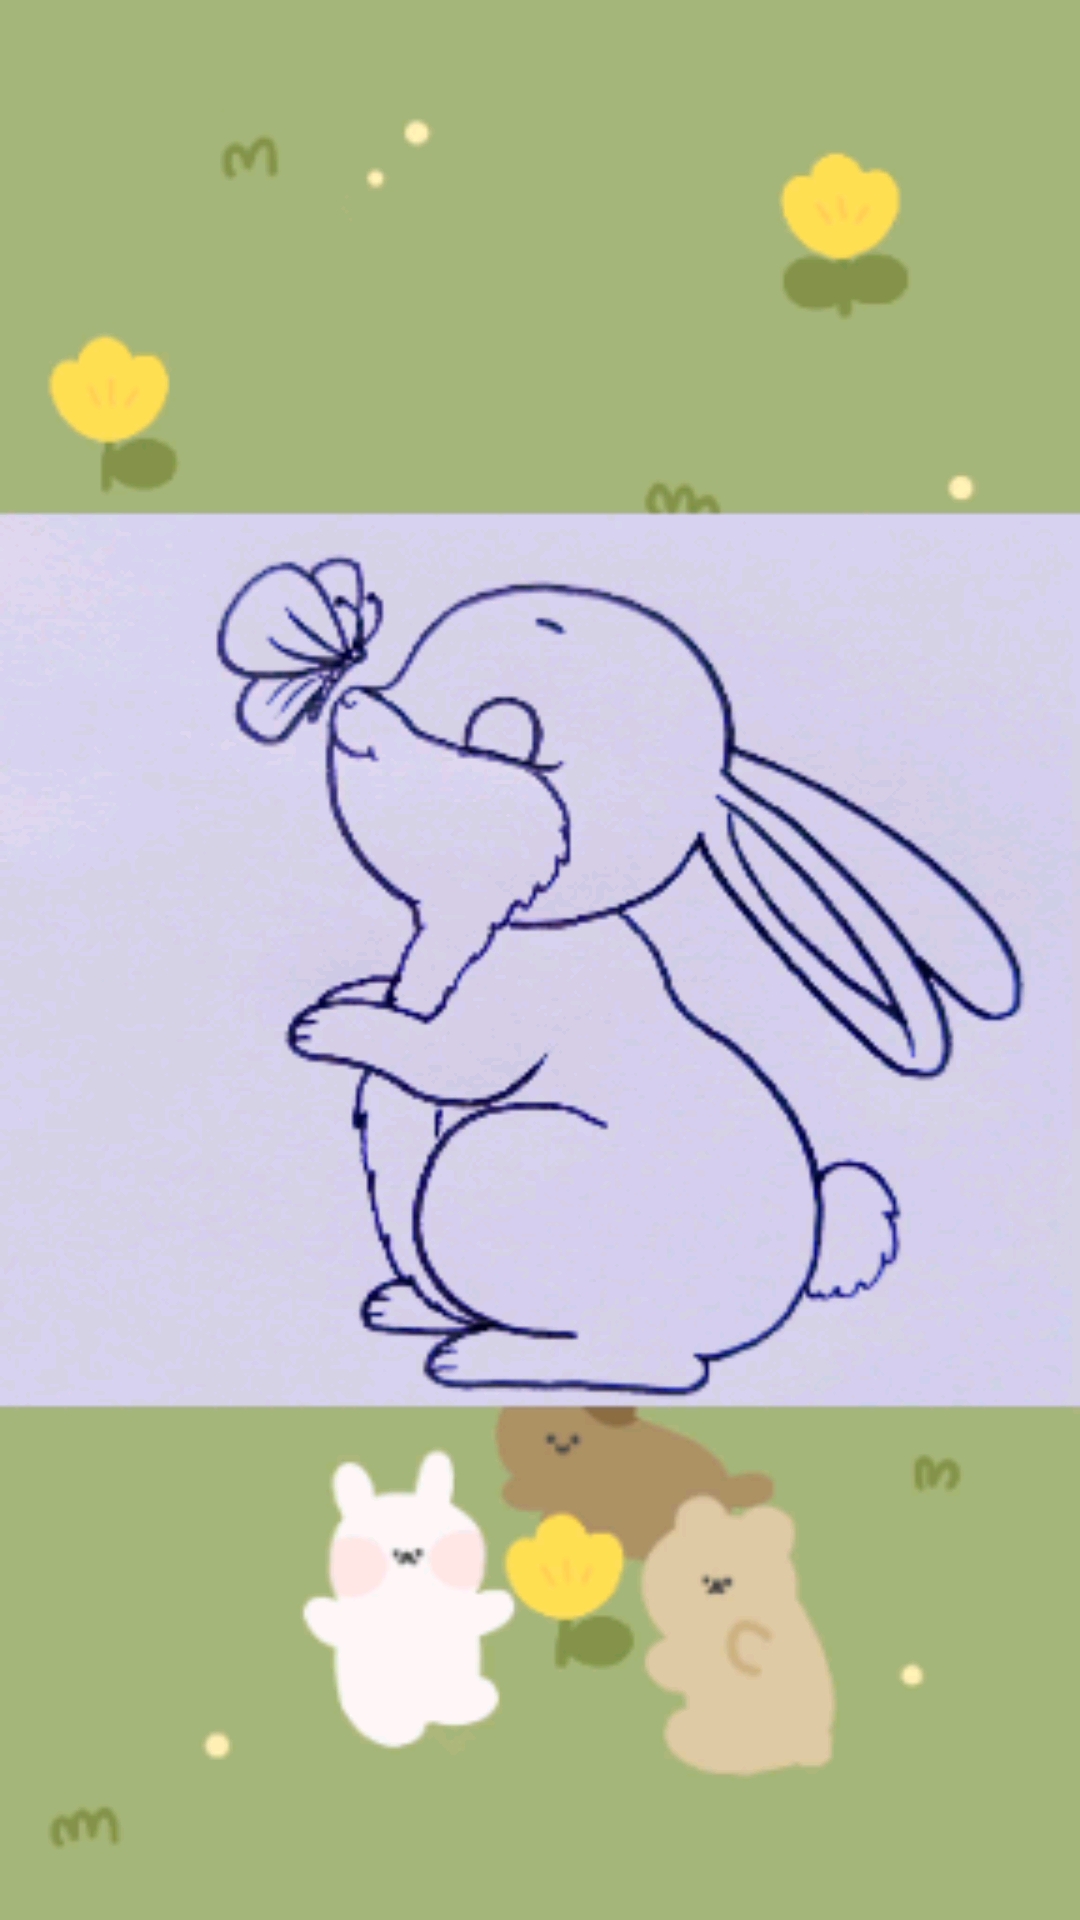 小兔子的简笔画 萌萌图片